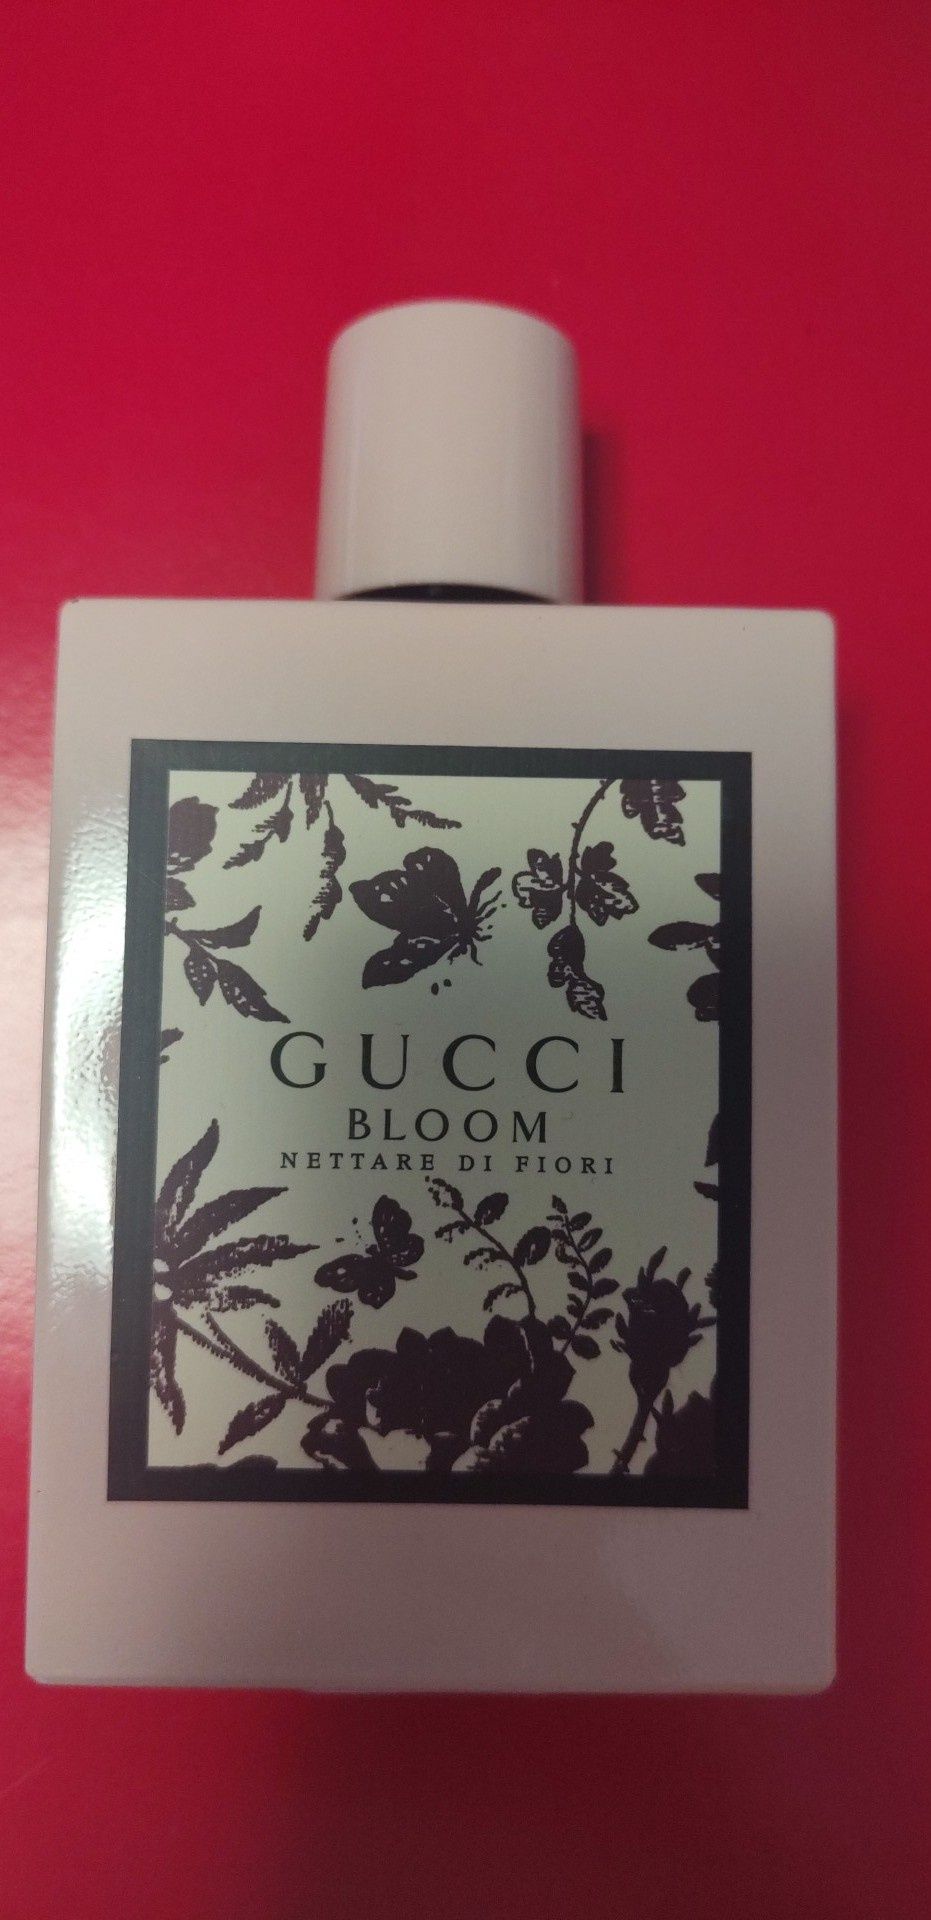 Perfum Gucci. Nettre di Fiori